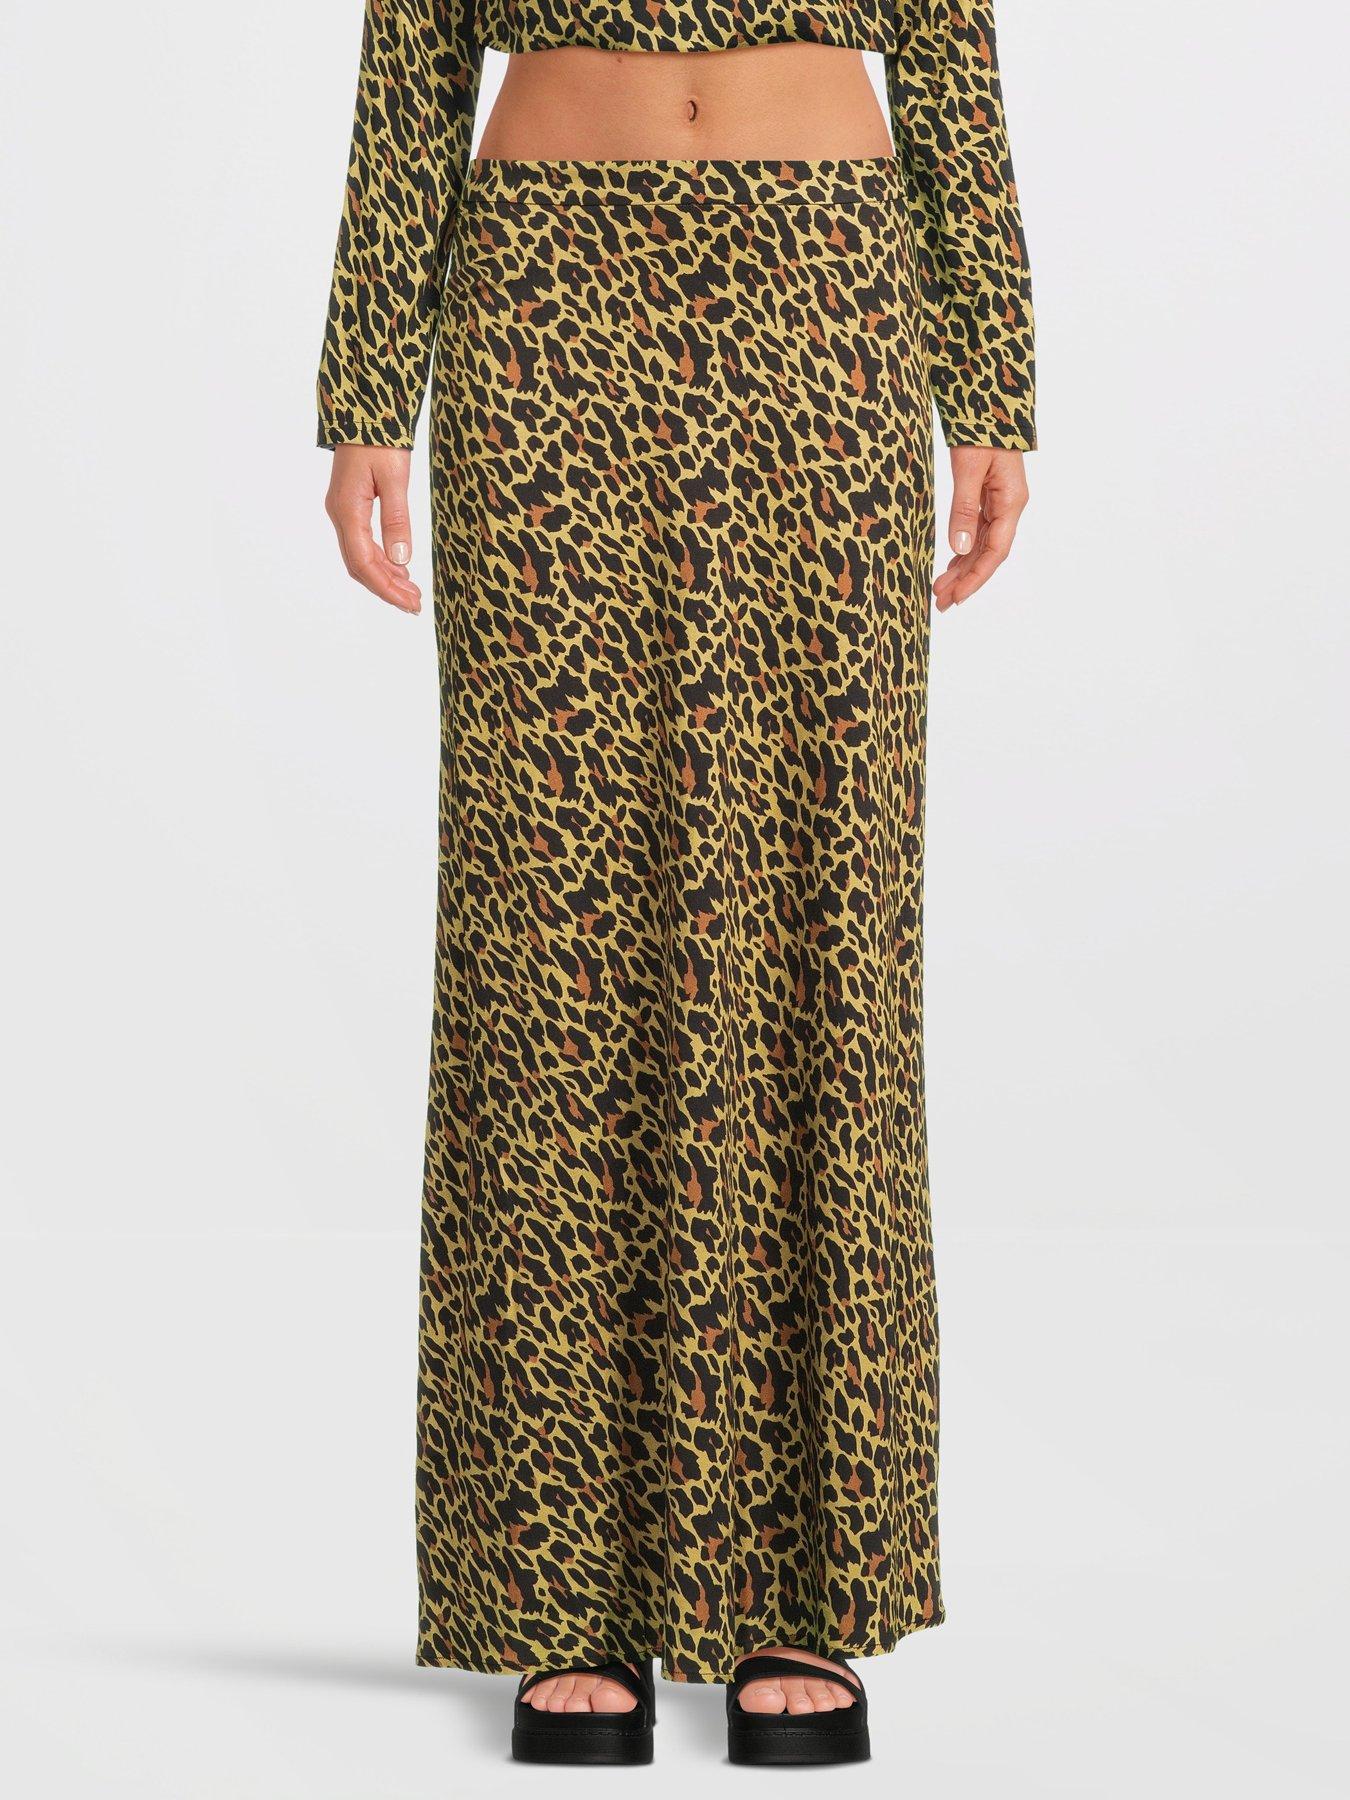 Lara Leopard Print Satin Midi Dress – Olivia Rubin